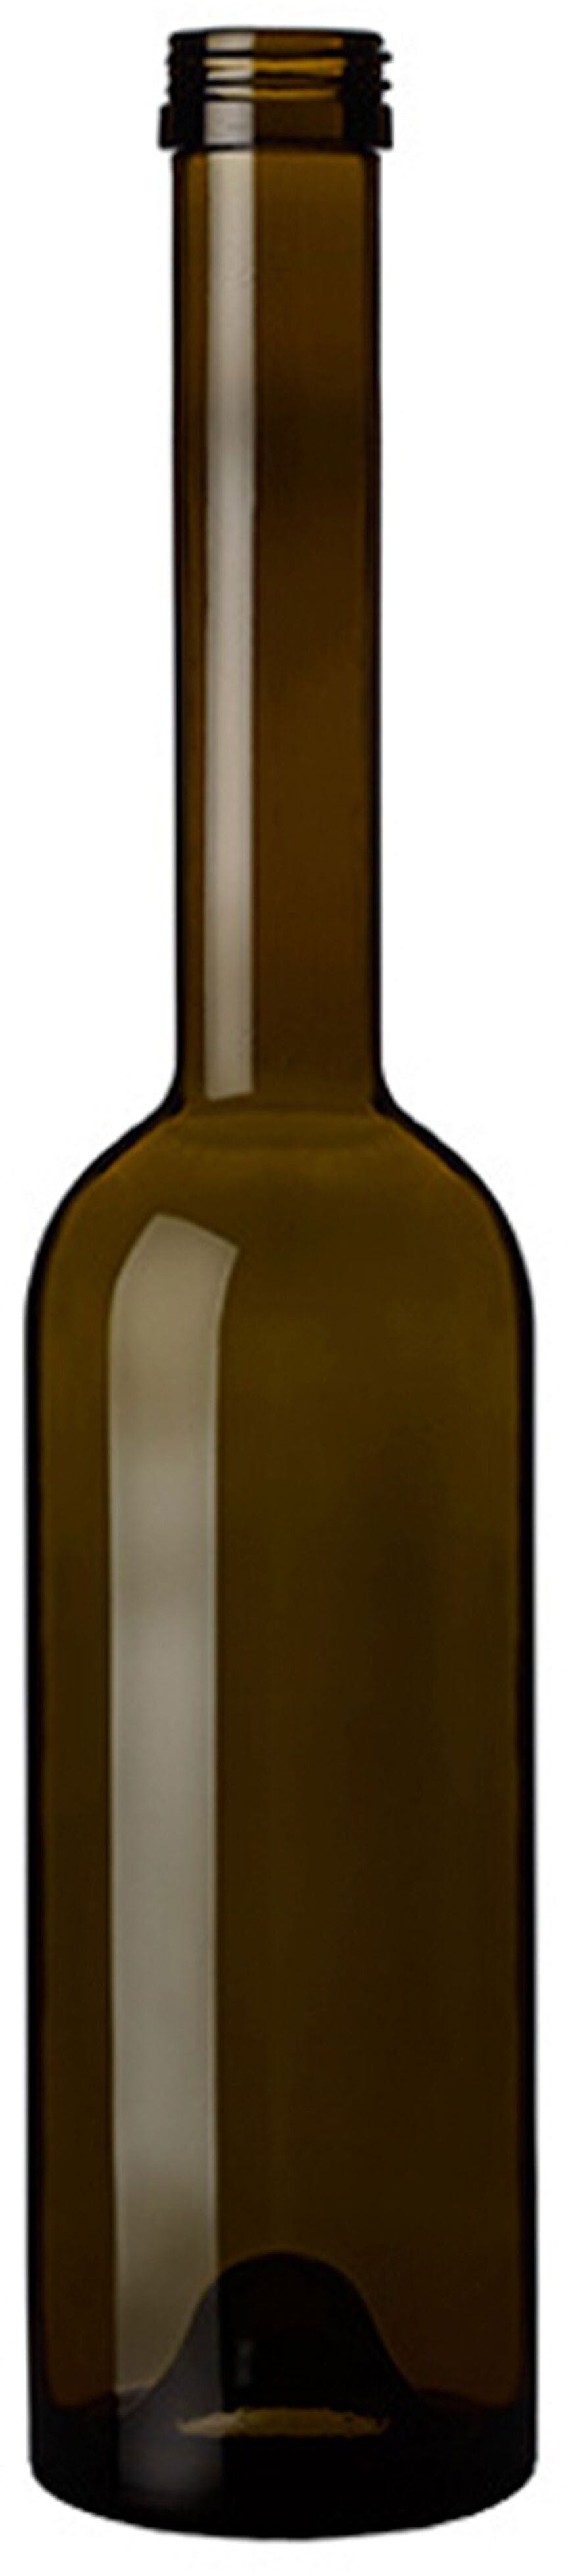 Bottle OPERA500 NUOVA P31,5X18 VA